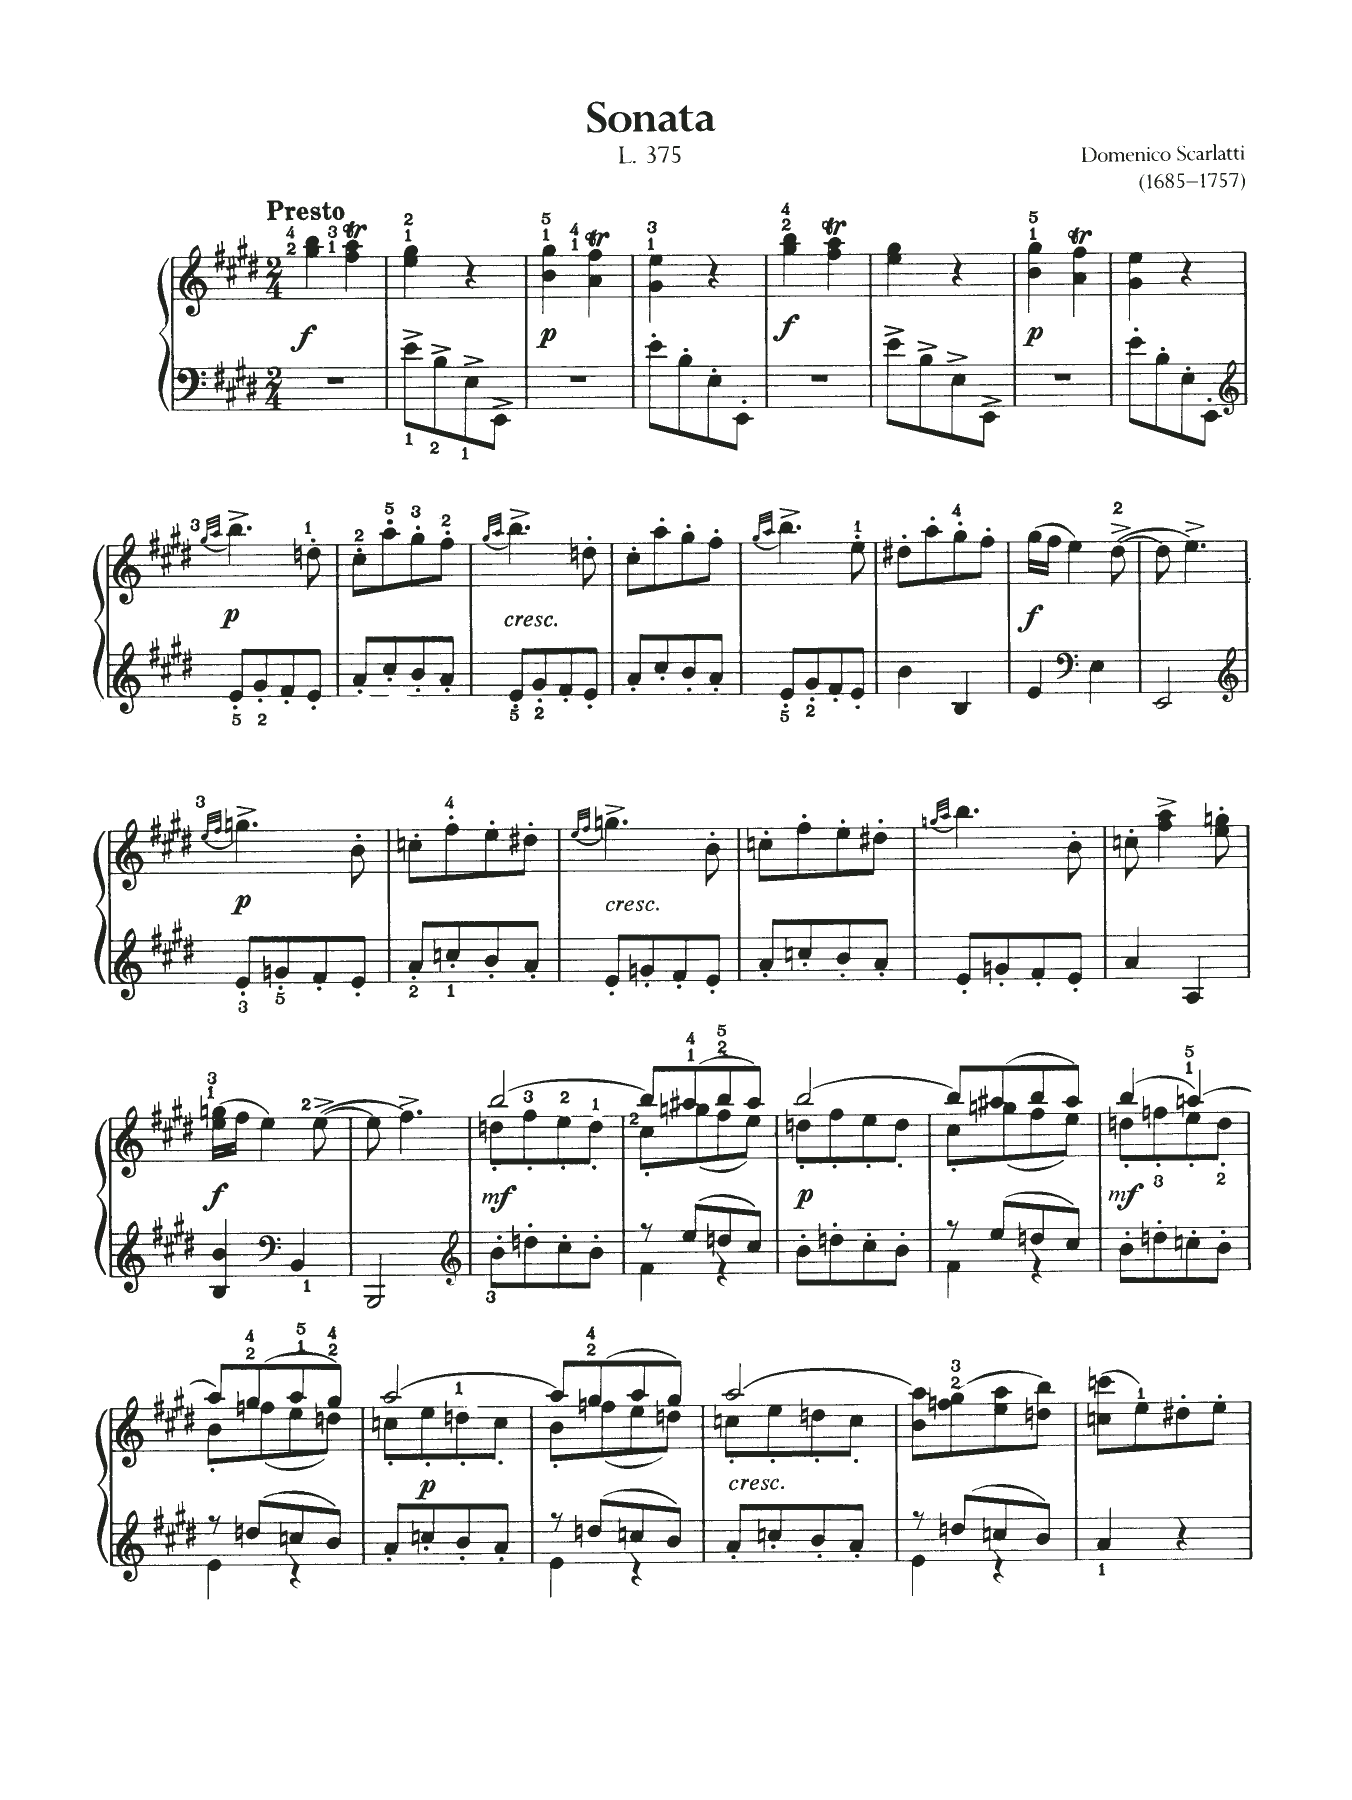 Domenico Scarlatti Sonata, L. 375 sheet music notes and chords arranged for Piano Solo